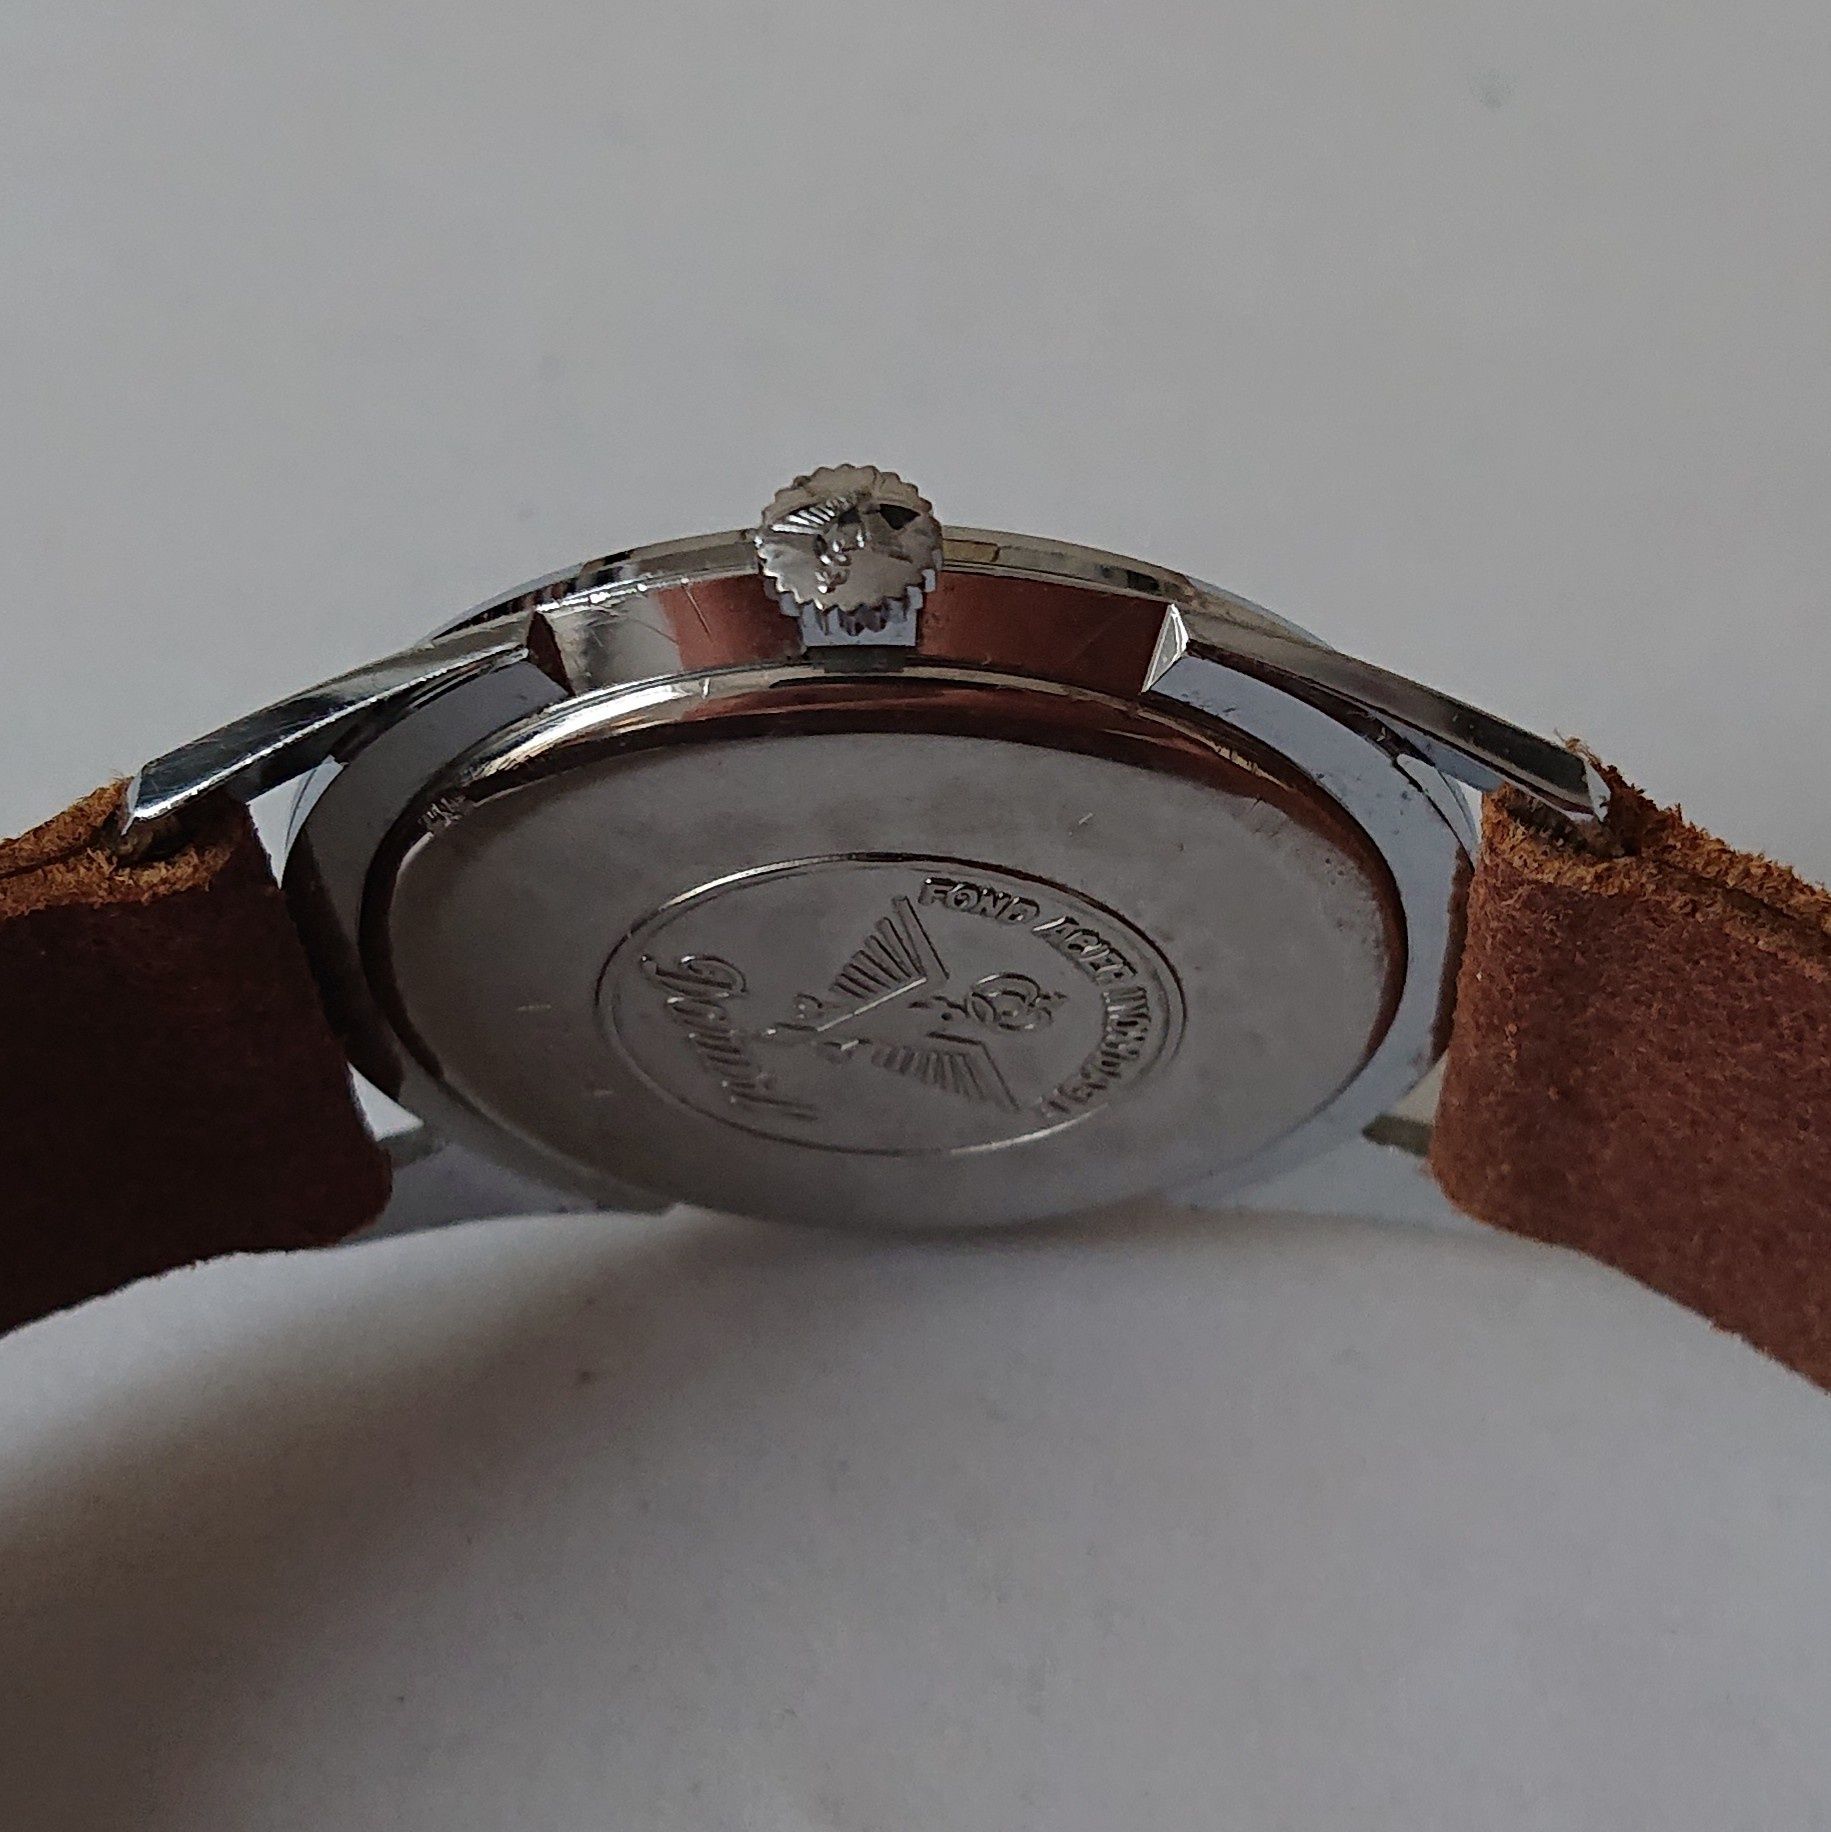 Darwil Specjal Flat Lord 71 swiss made zegarek naręczny kolekcjonerski